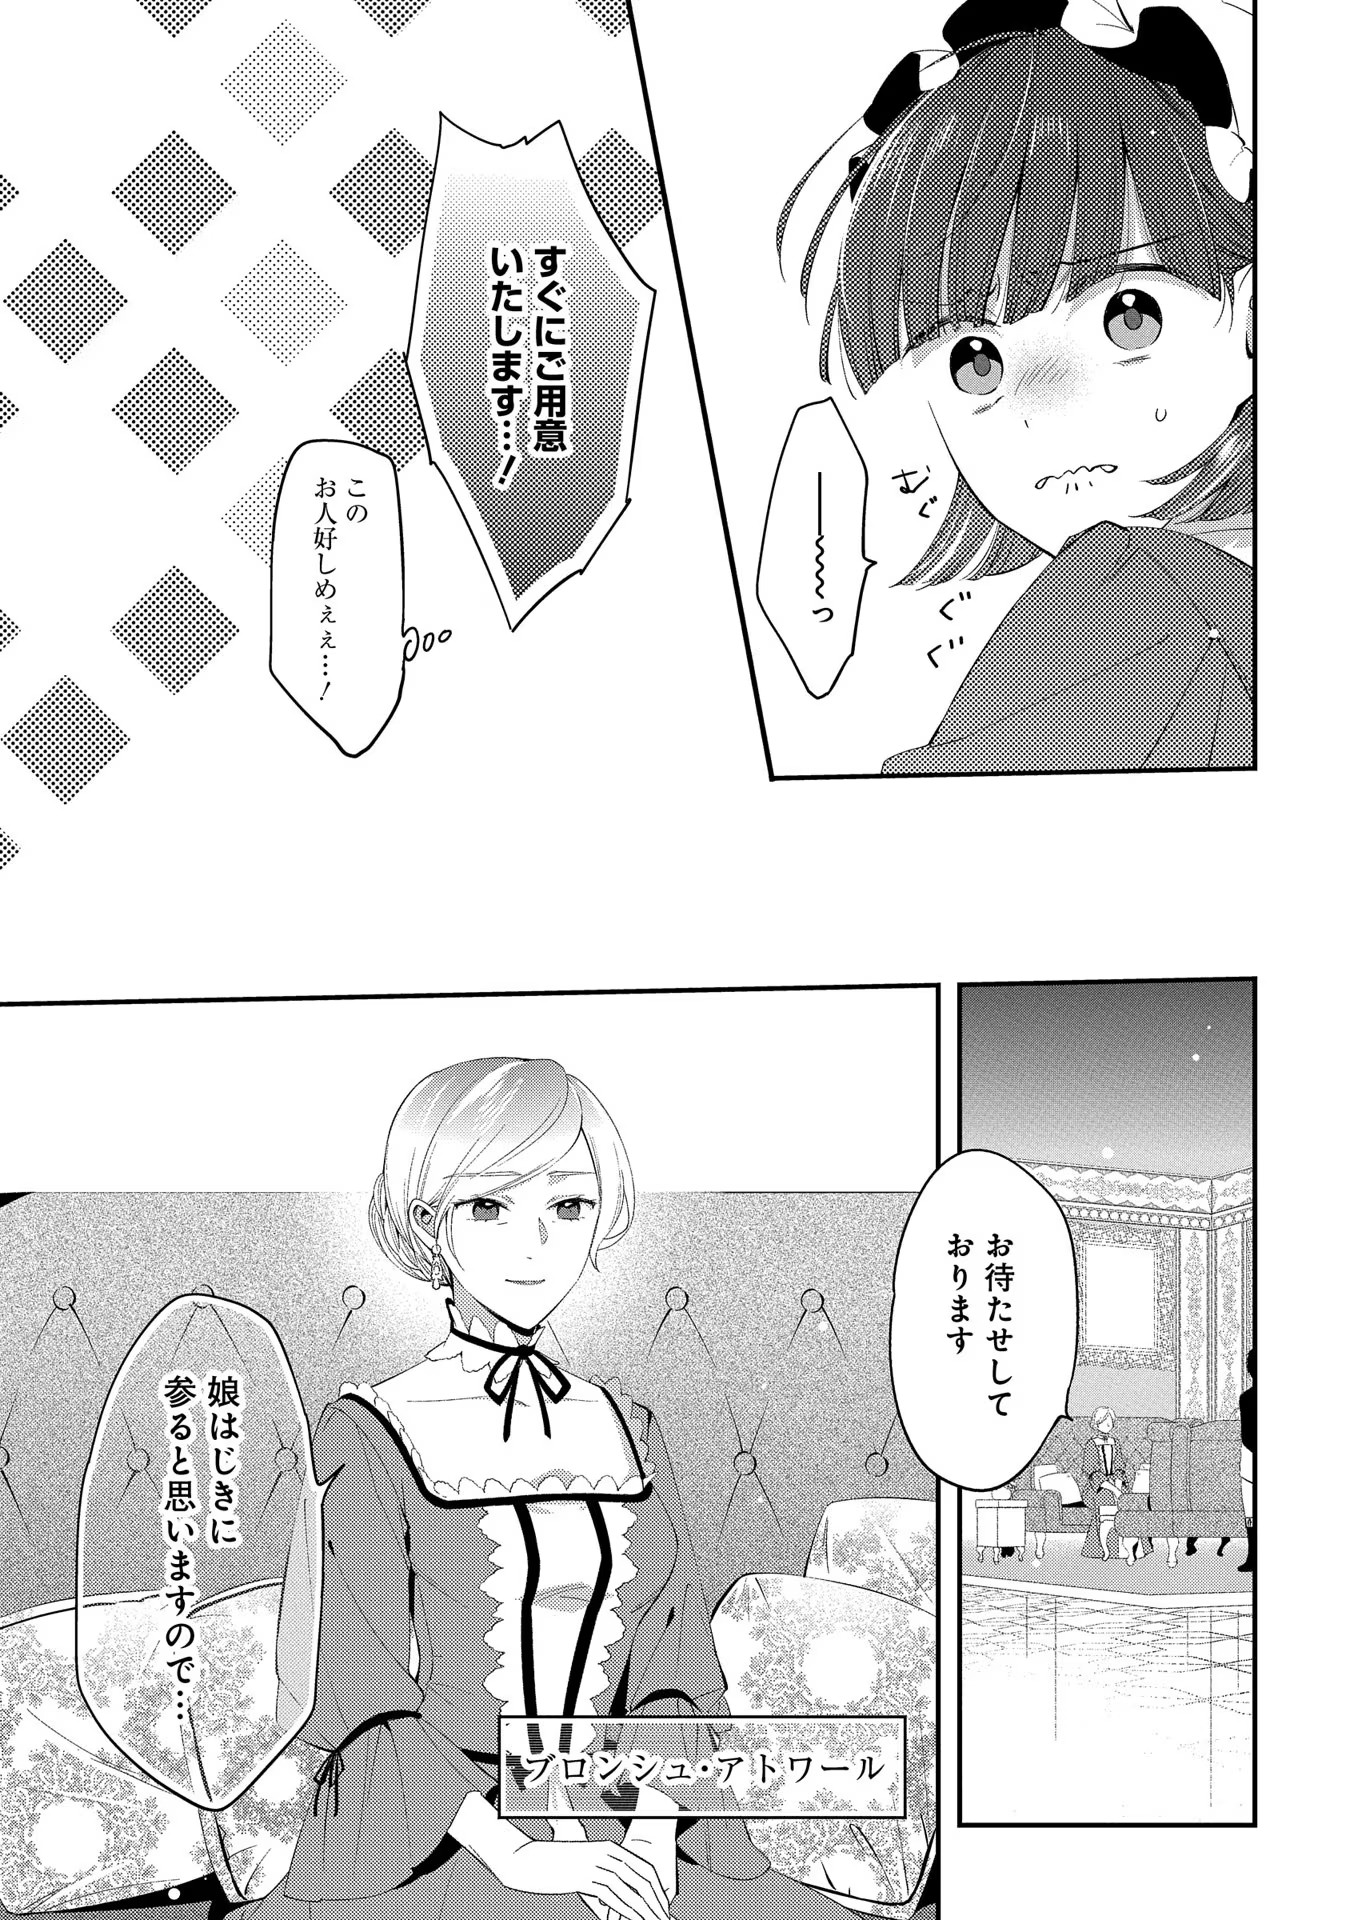 Outaishi ni Konyaku Hakisareta no de, Mou Baka no Furi wa Yameyou to Omoimasu - Chapter 3 - Page 5